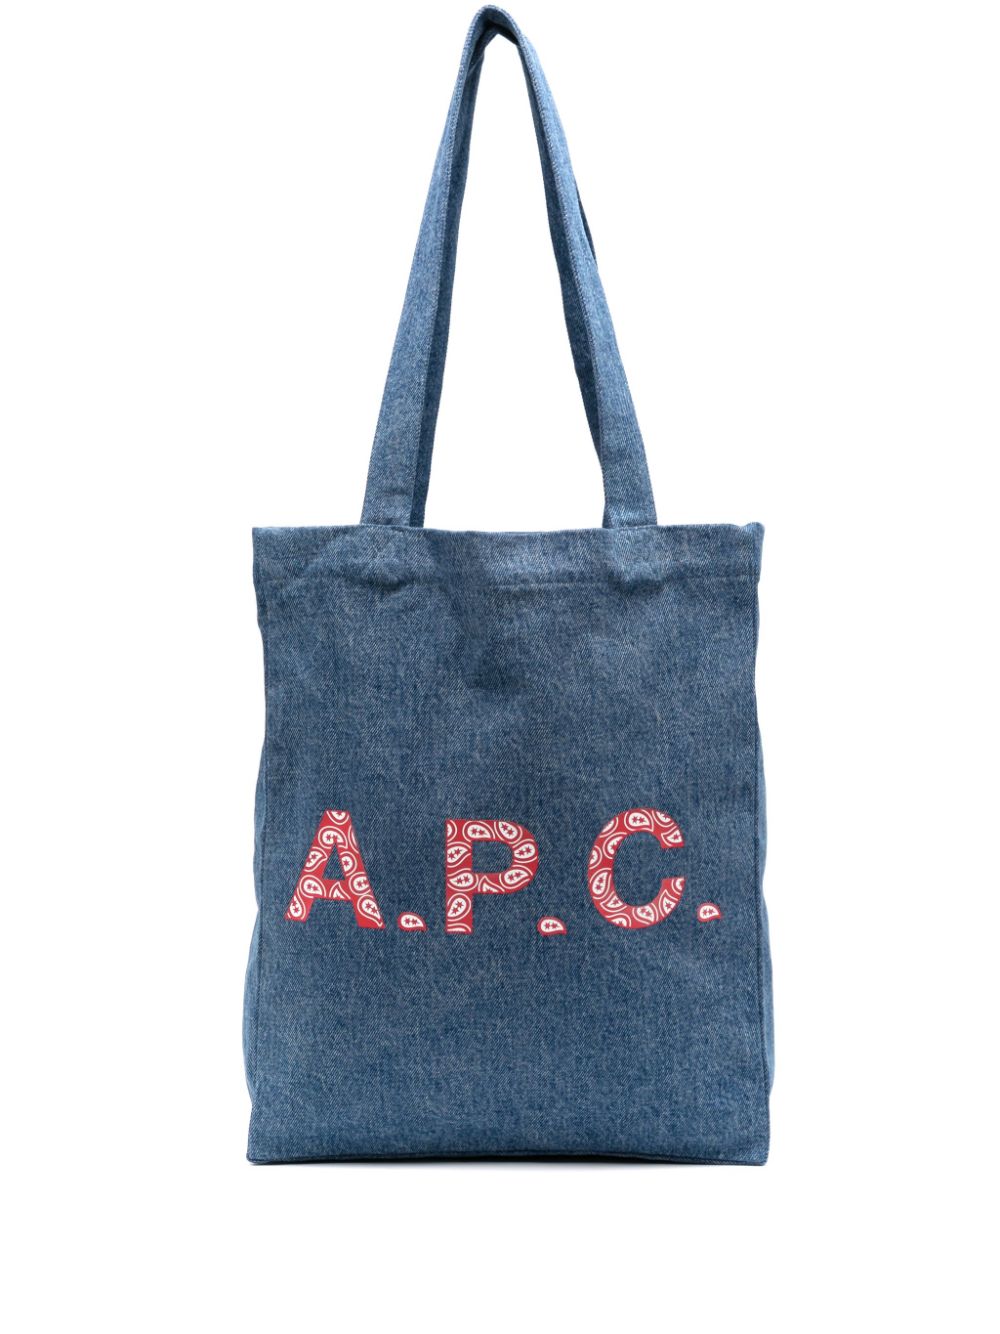 Shop Apc Lou Denim Tote Bag In Blue